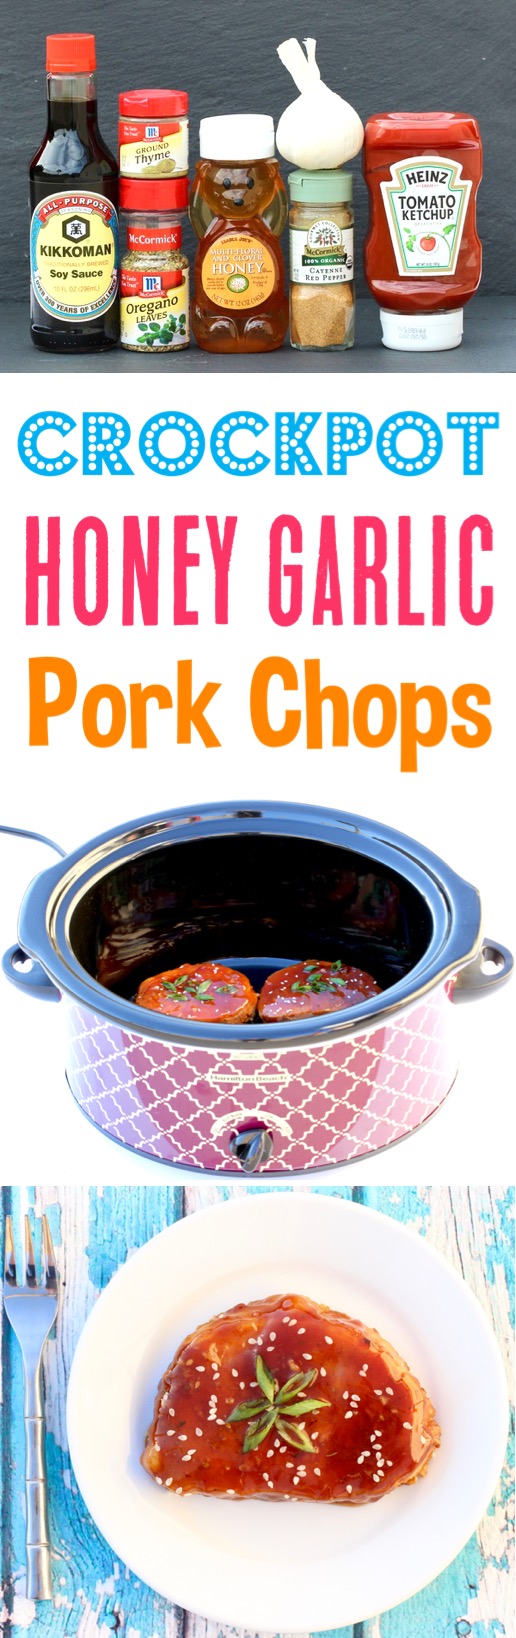 Crockpot Honey Garlic Pork Chops Recipe Easy Dinner